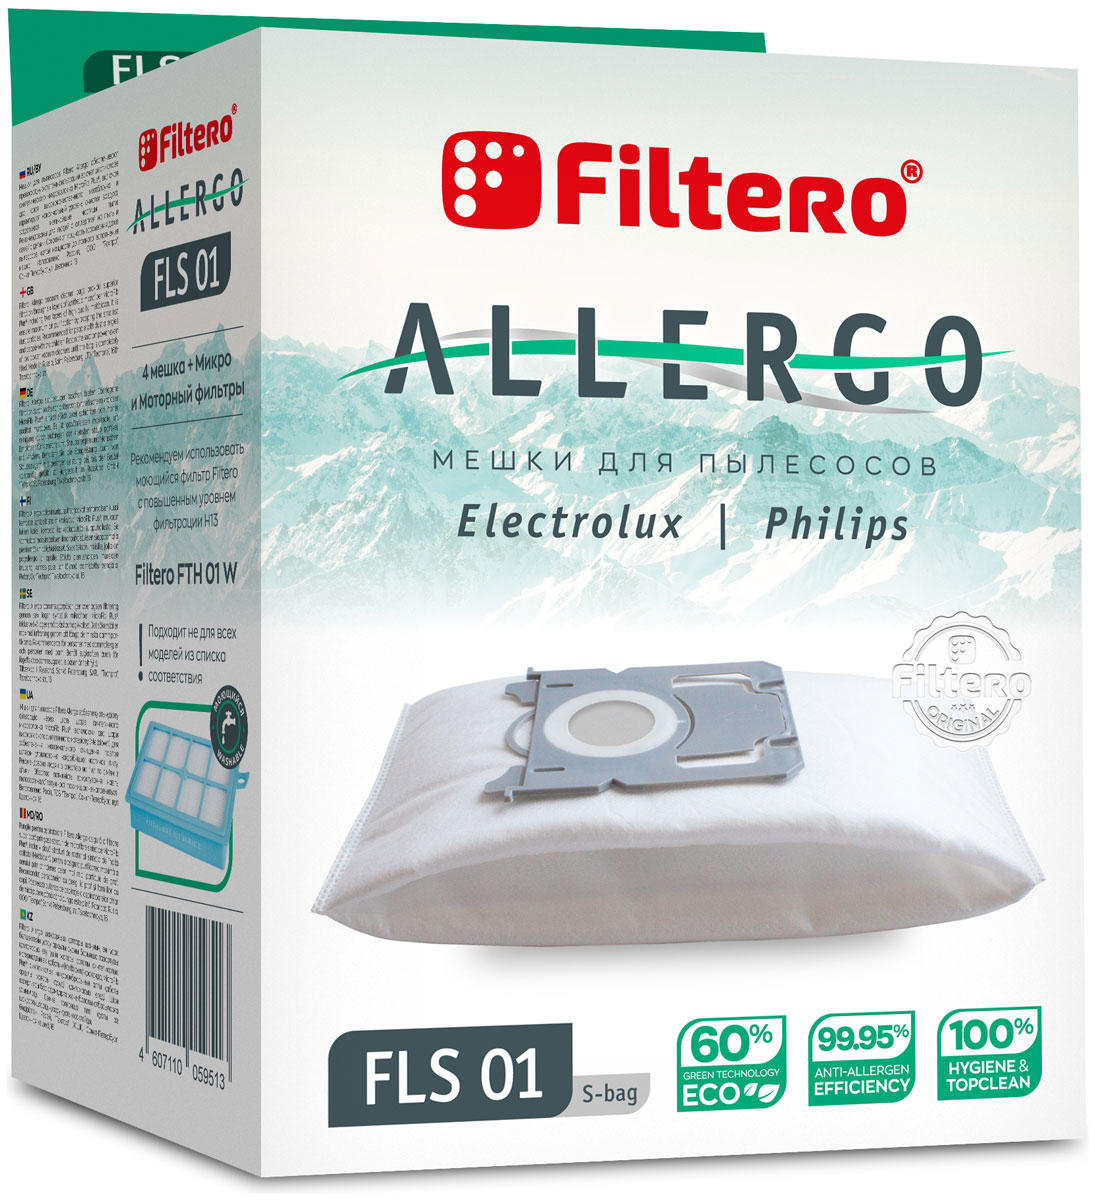 Пылесборники Filtero FLS 01 S-bag Allergo 4 шт. + моторный фильтр и микрофильтр пылесборники filtero fls 01 s bag 10 xl ecoline